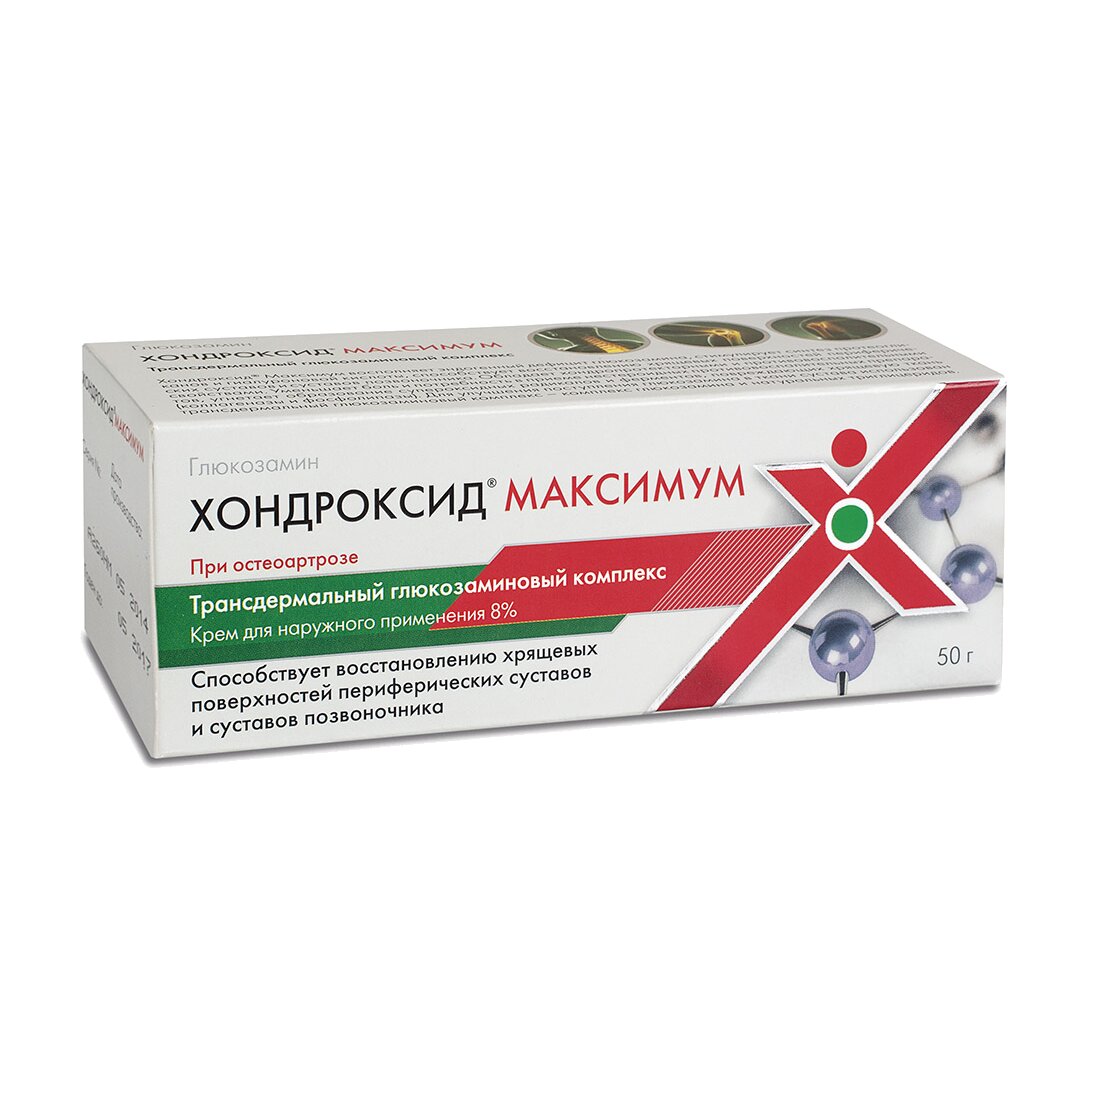 Хондроксид Максимум крем для наружного применения 8% 50 г туба 1 шт.